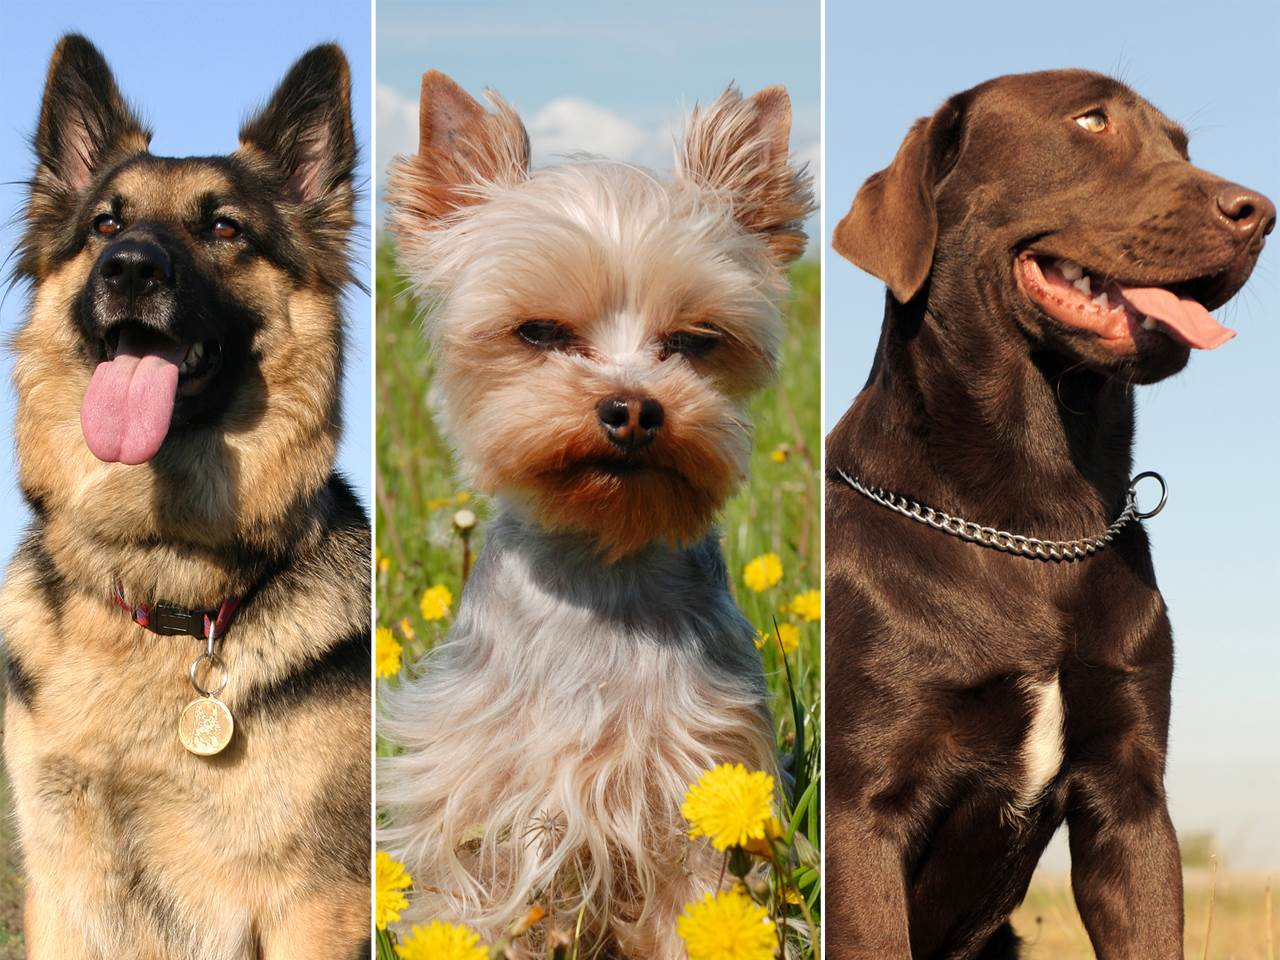 Модные породы собак: самые известные в России